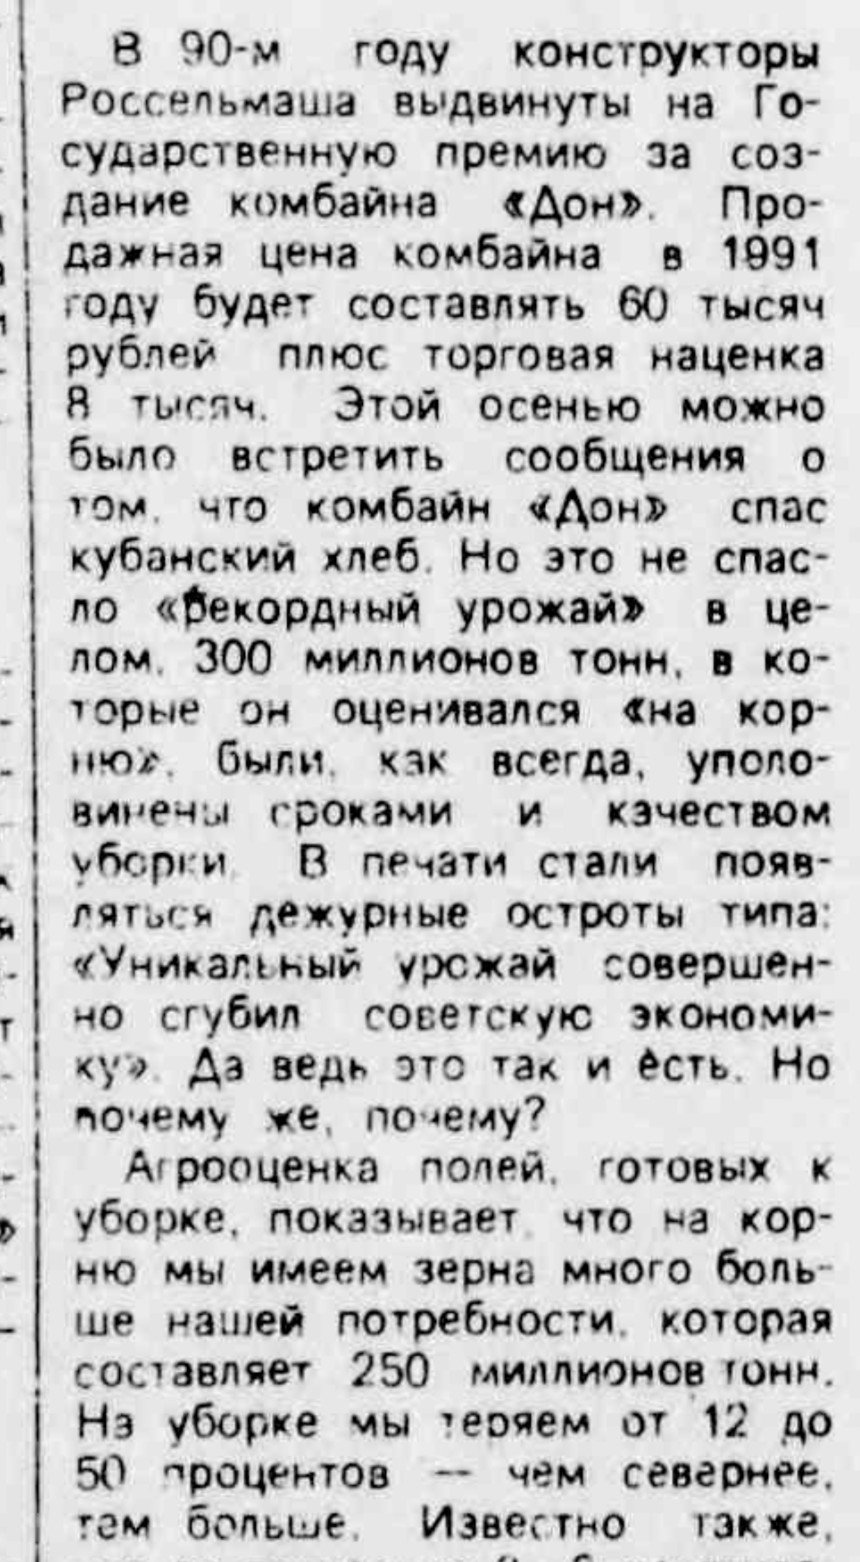 &ldquo;Российская Газета, 1991 год&rdquo;